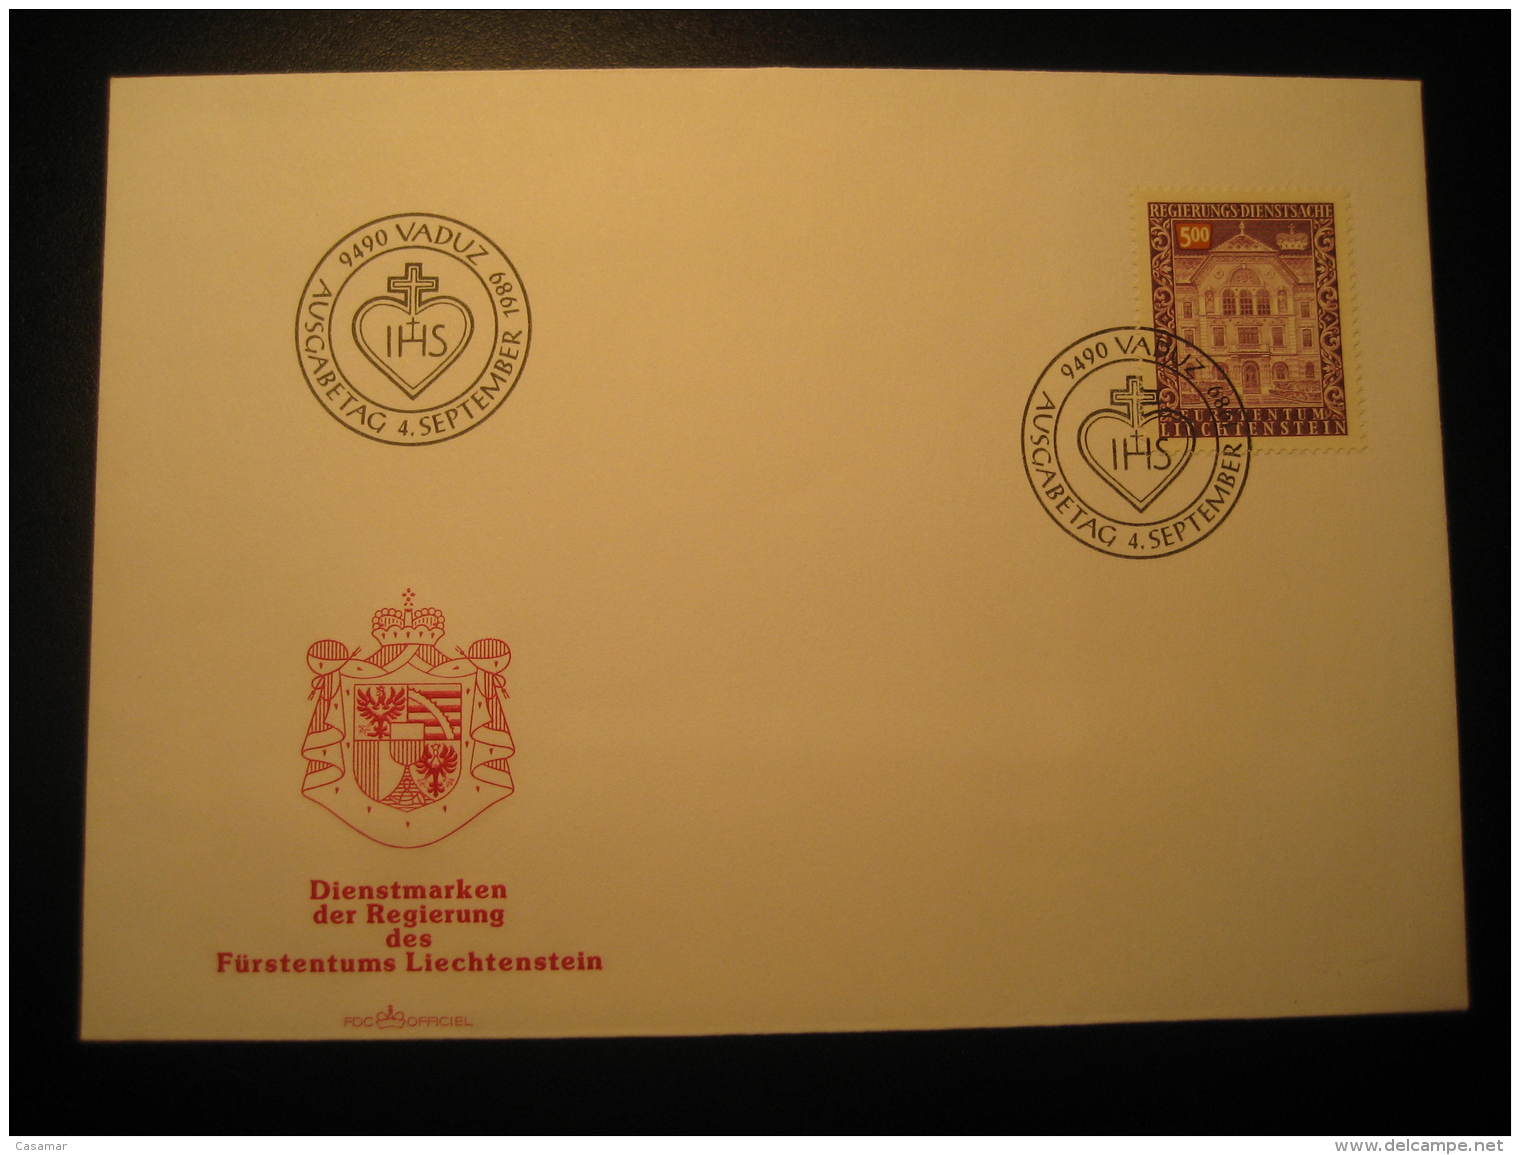 VADUZ 1989 FDC Service Official Stamp Cancel Cover Liechtenstein Dienstsache - Service